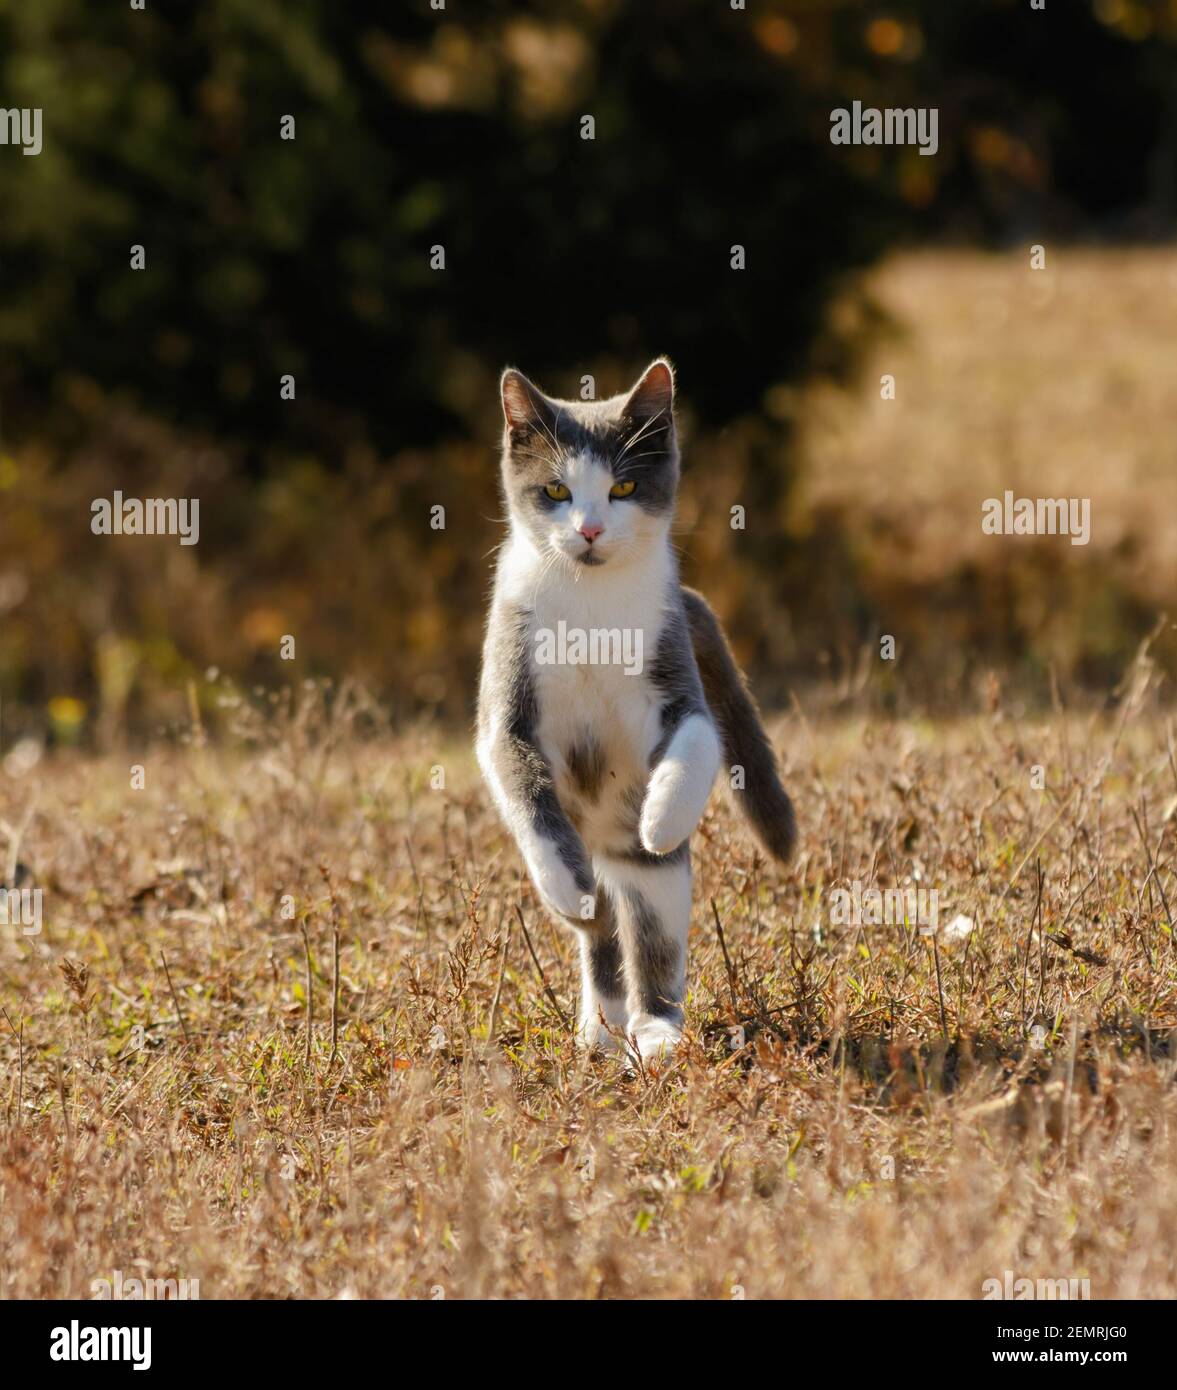 Magnifique chat de tuxedo gris et blanc en route vers l'appareil photo un champ d'automne ensoleillé Banque D'Images